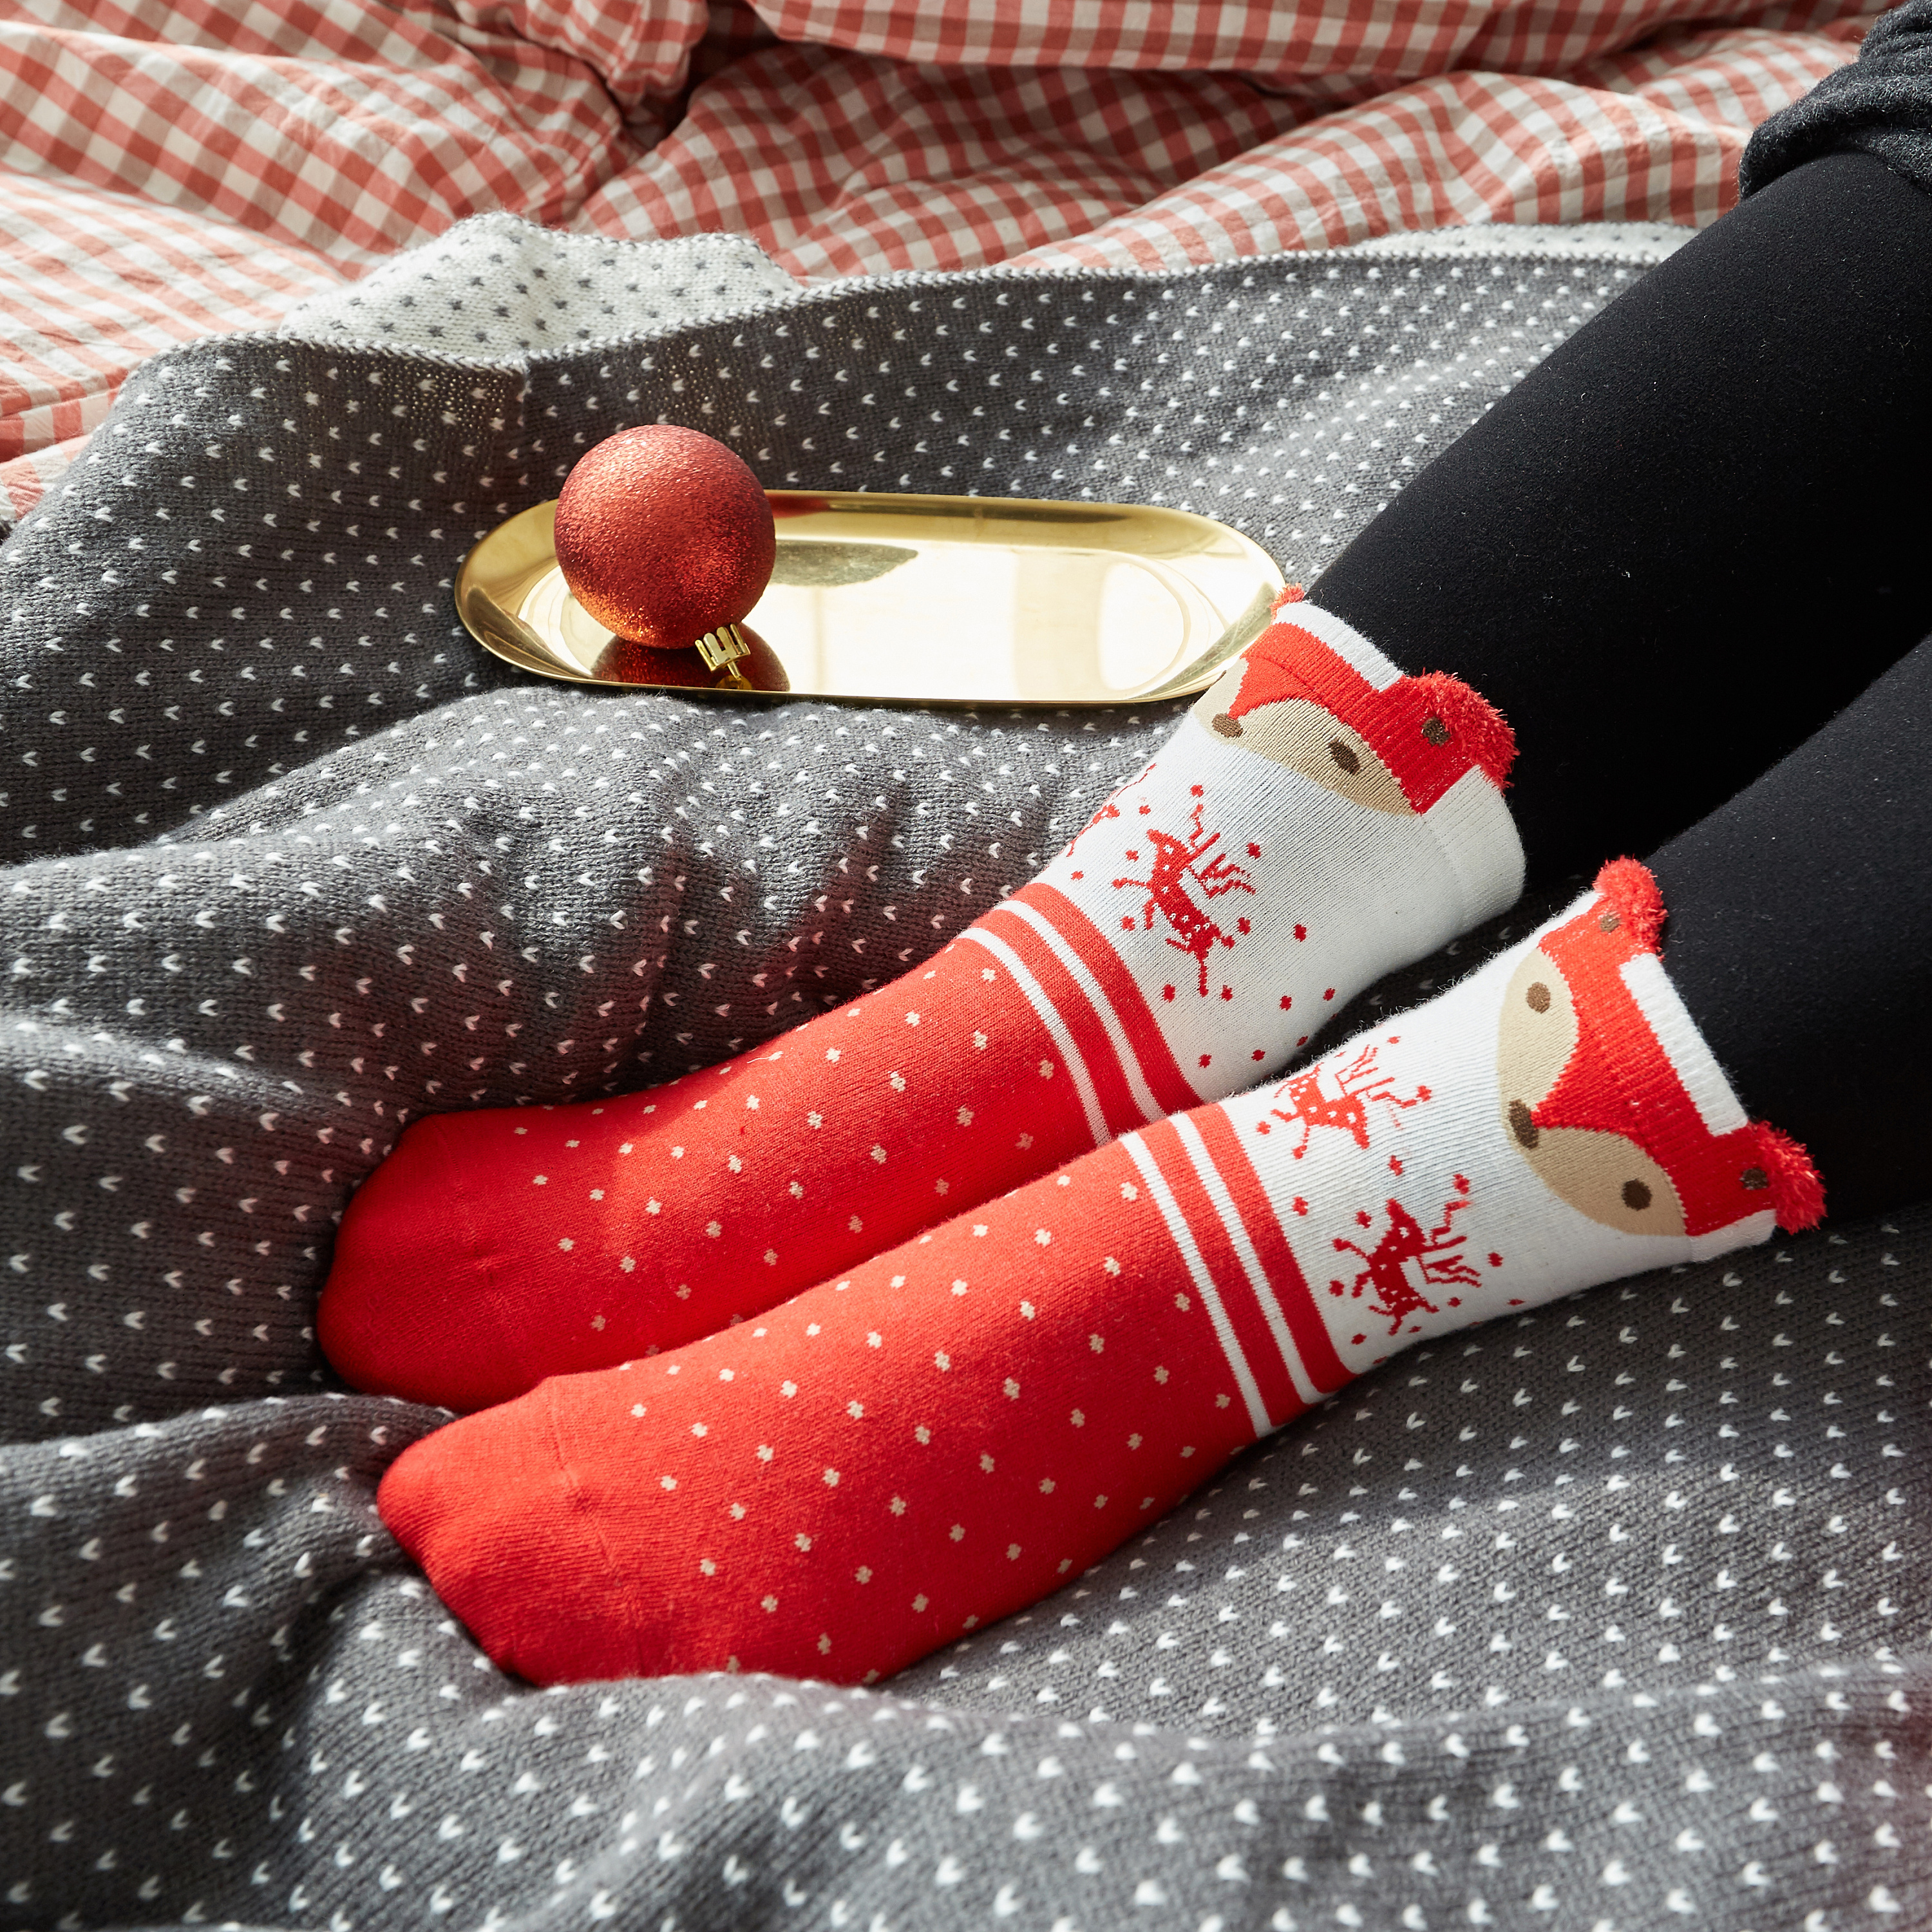 新款小号圣诞袜 圣诞袜 圣诞糖果袜 圣诞礼品袋 圣诞刀叉套-阿里巴巴